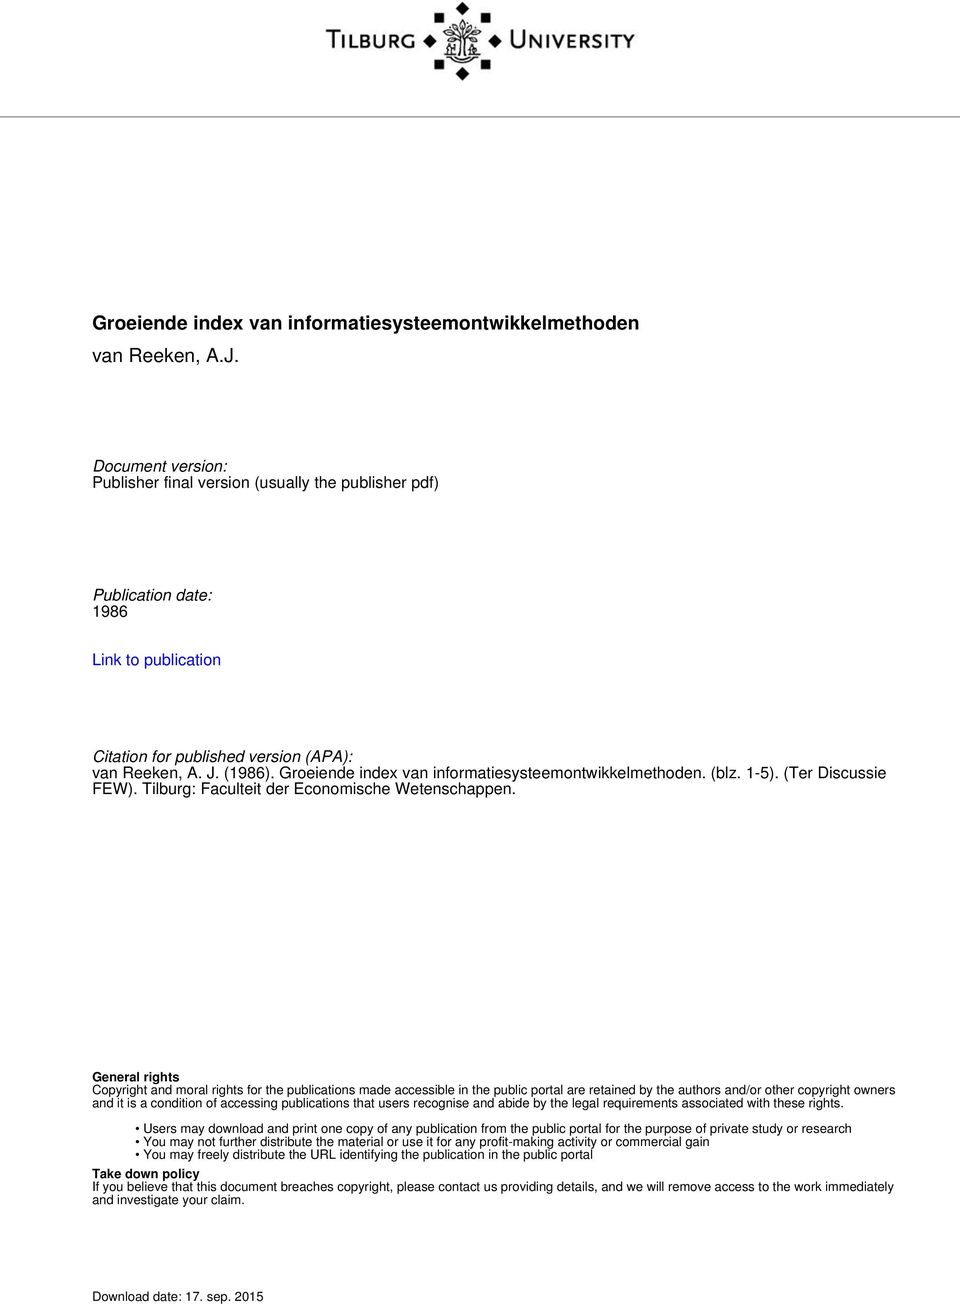 Groeiende index van informatiesysteemontwikkelmethoden. (blz. 1-5). (Ter Discussie FEW). Tilburg: Faculteit der Economische Wetenschappen.